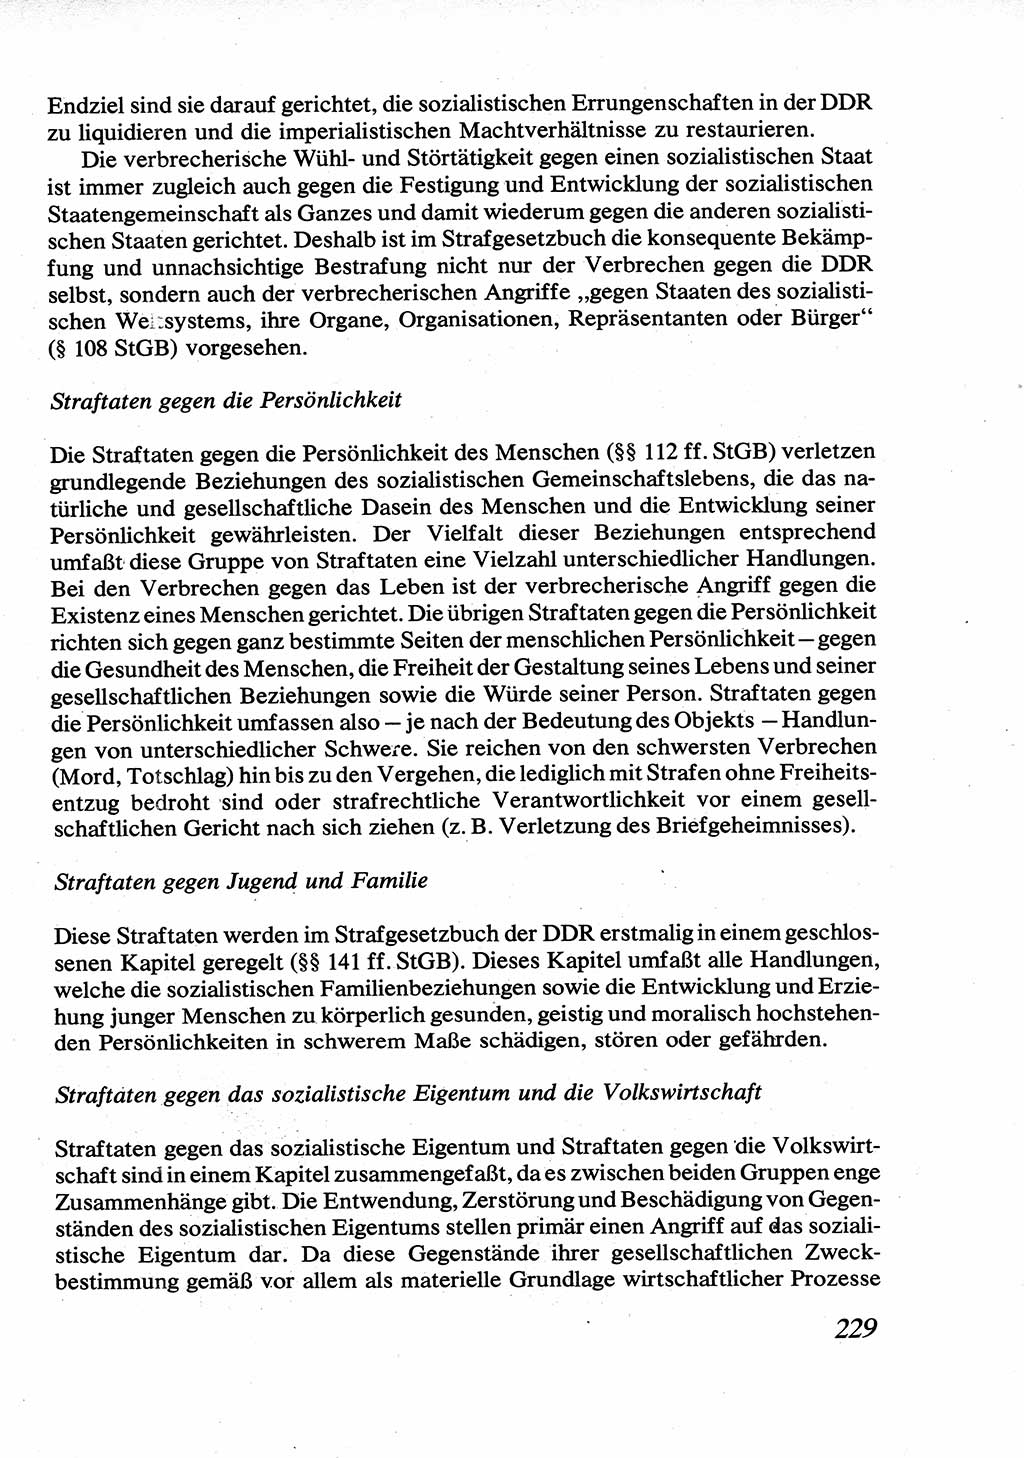 Strafrecht [Deutsche Demokratische Republik (DDR)], Allgemeiner Teil, Lehrbuch 1976, Seite 229 (Strafr. DDR AT Lb. 1976, S. 229)